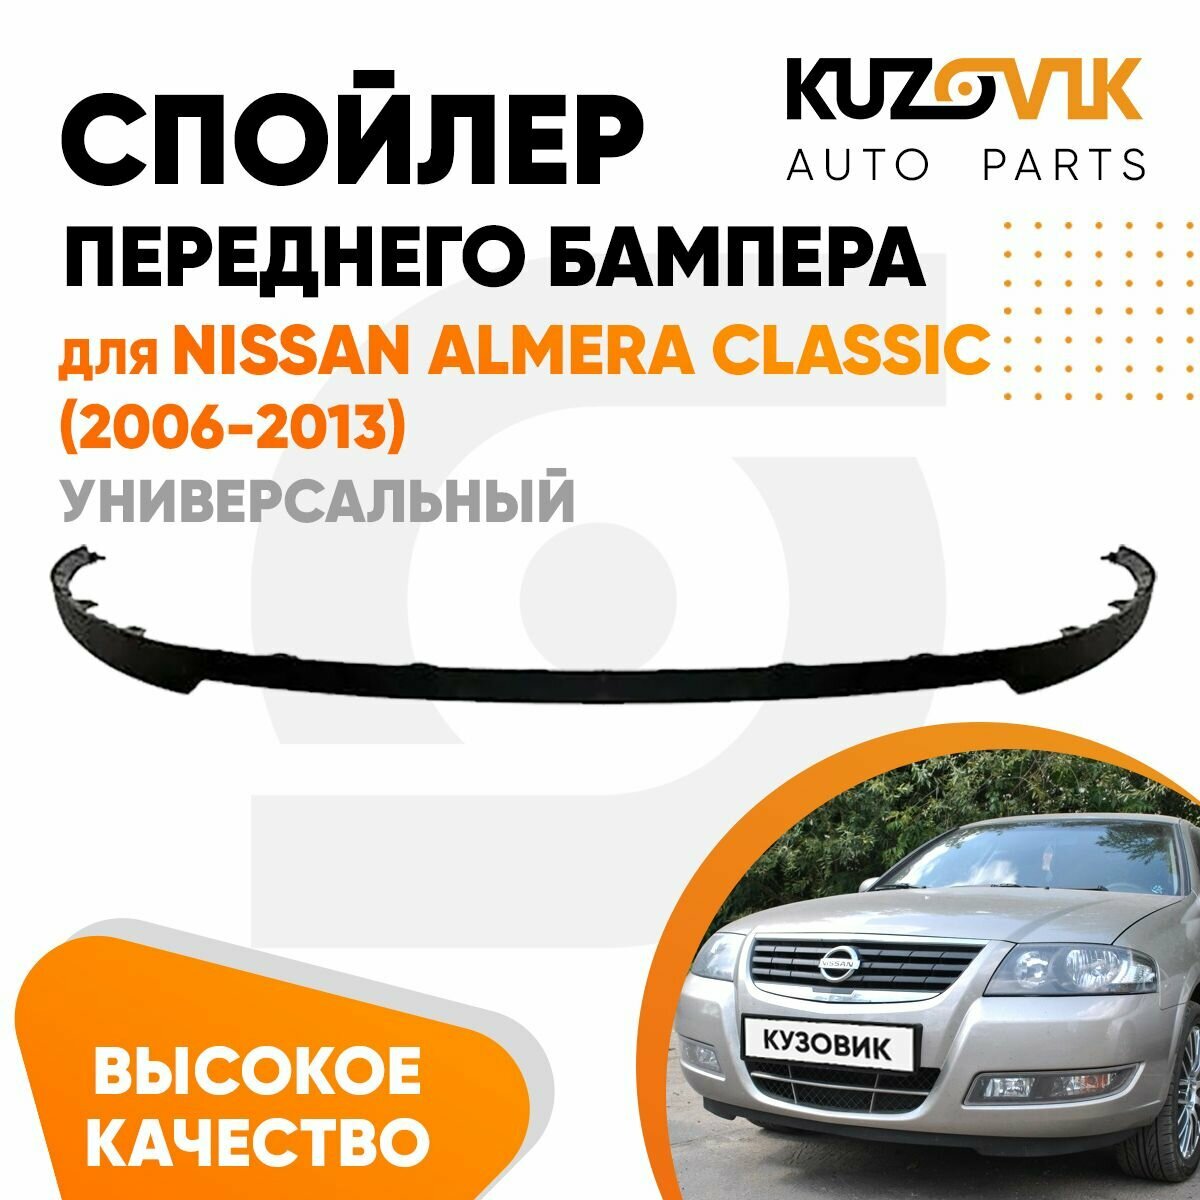 Спойлер переднего бампера Chevrolet Cruze (2009-2012)